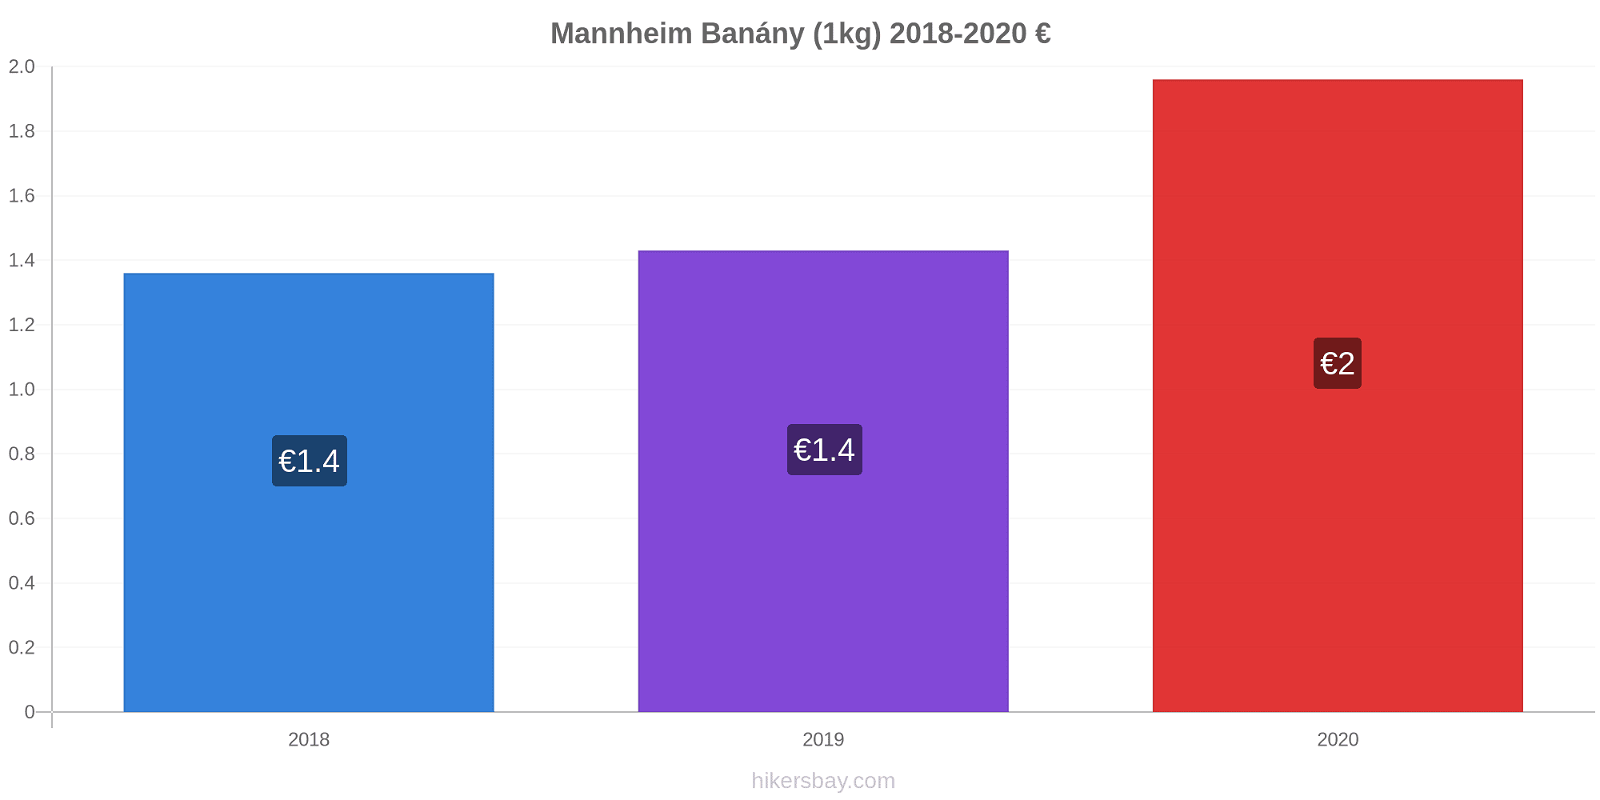 Mannheim změny cen Banány (1kg) hikersbay.com